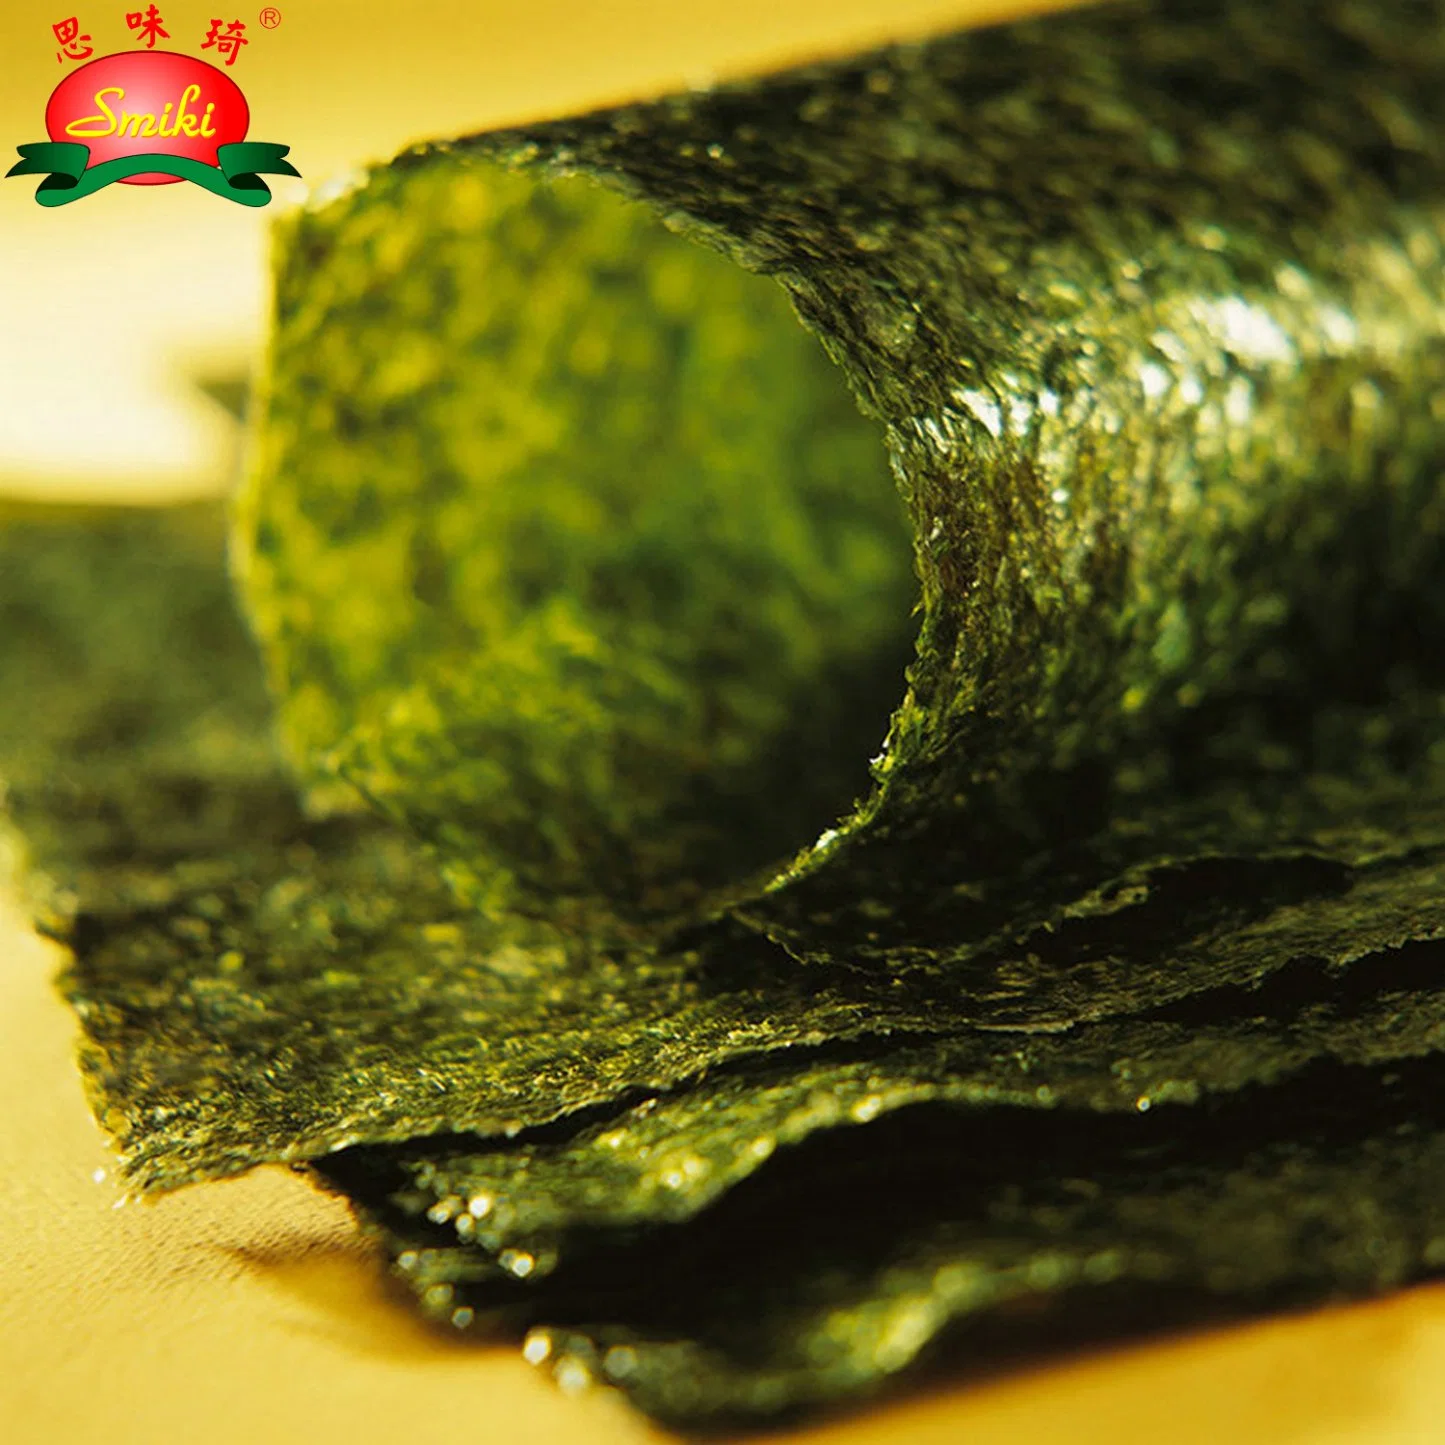 Roasted Sushi Nori Seaweed with Gluten Free